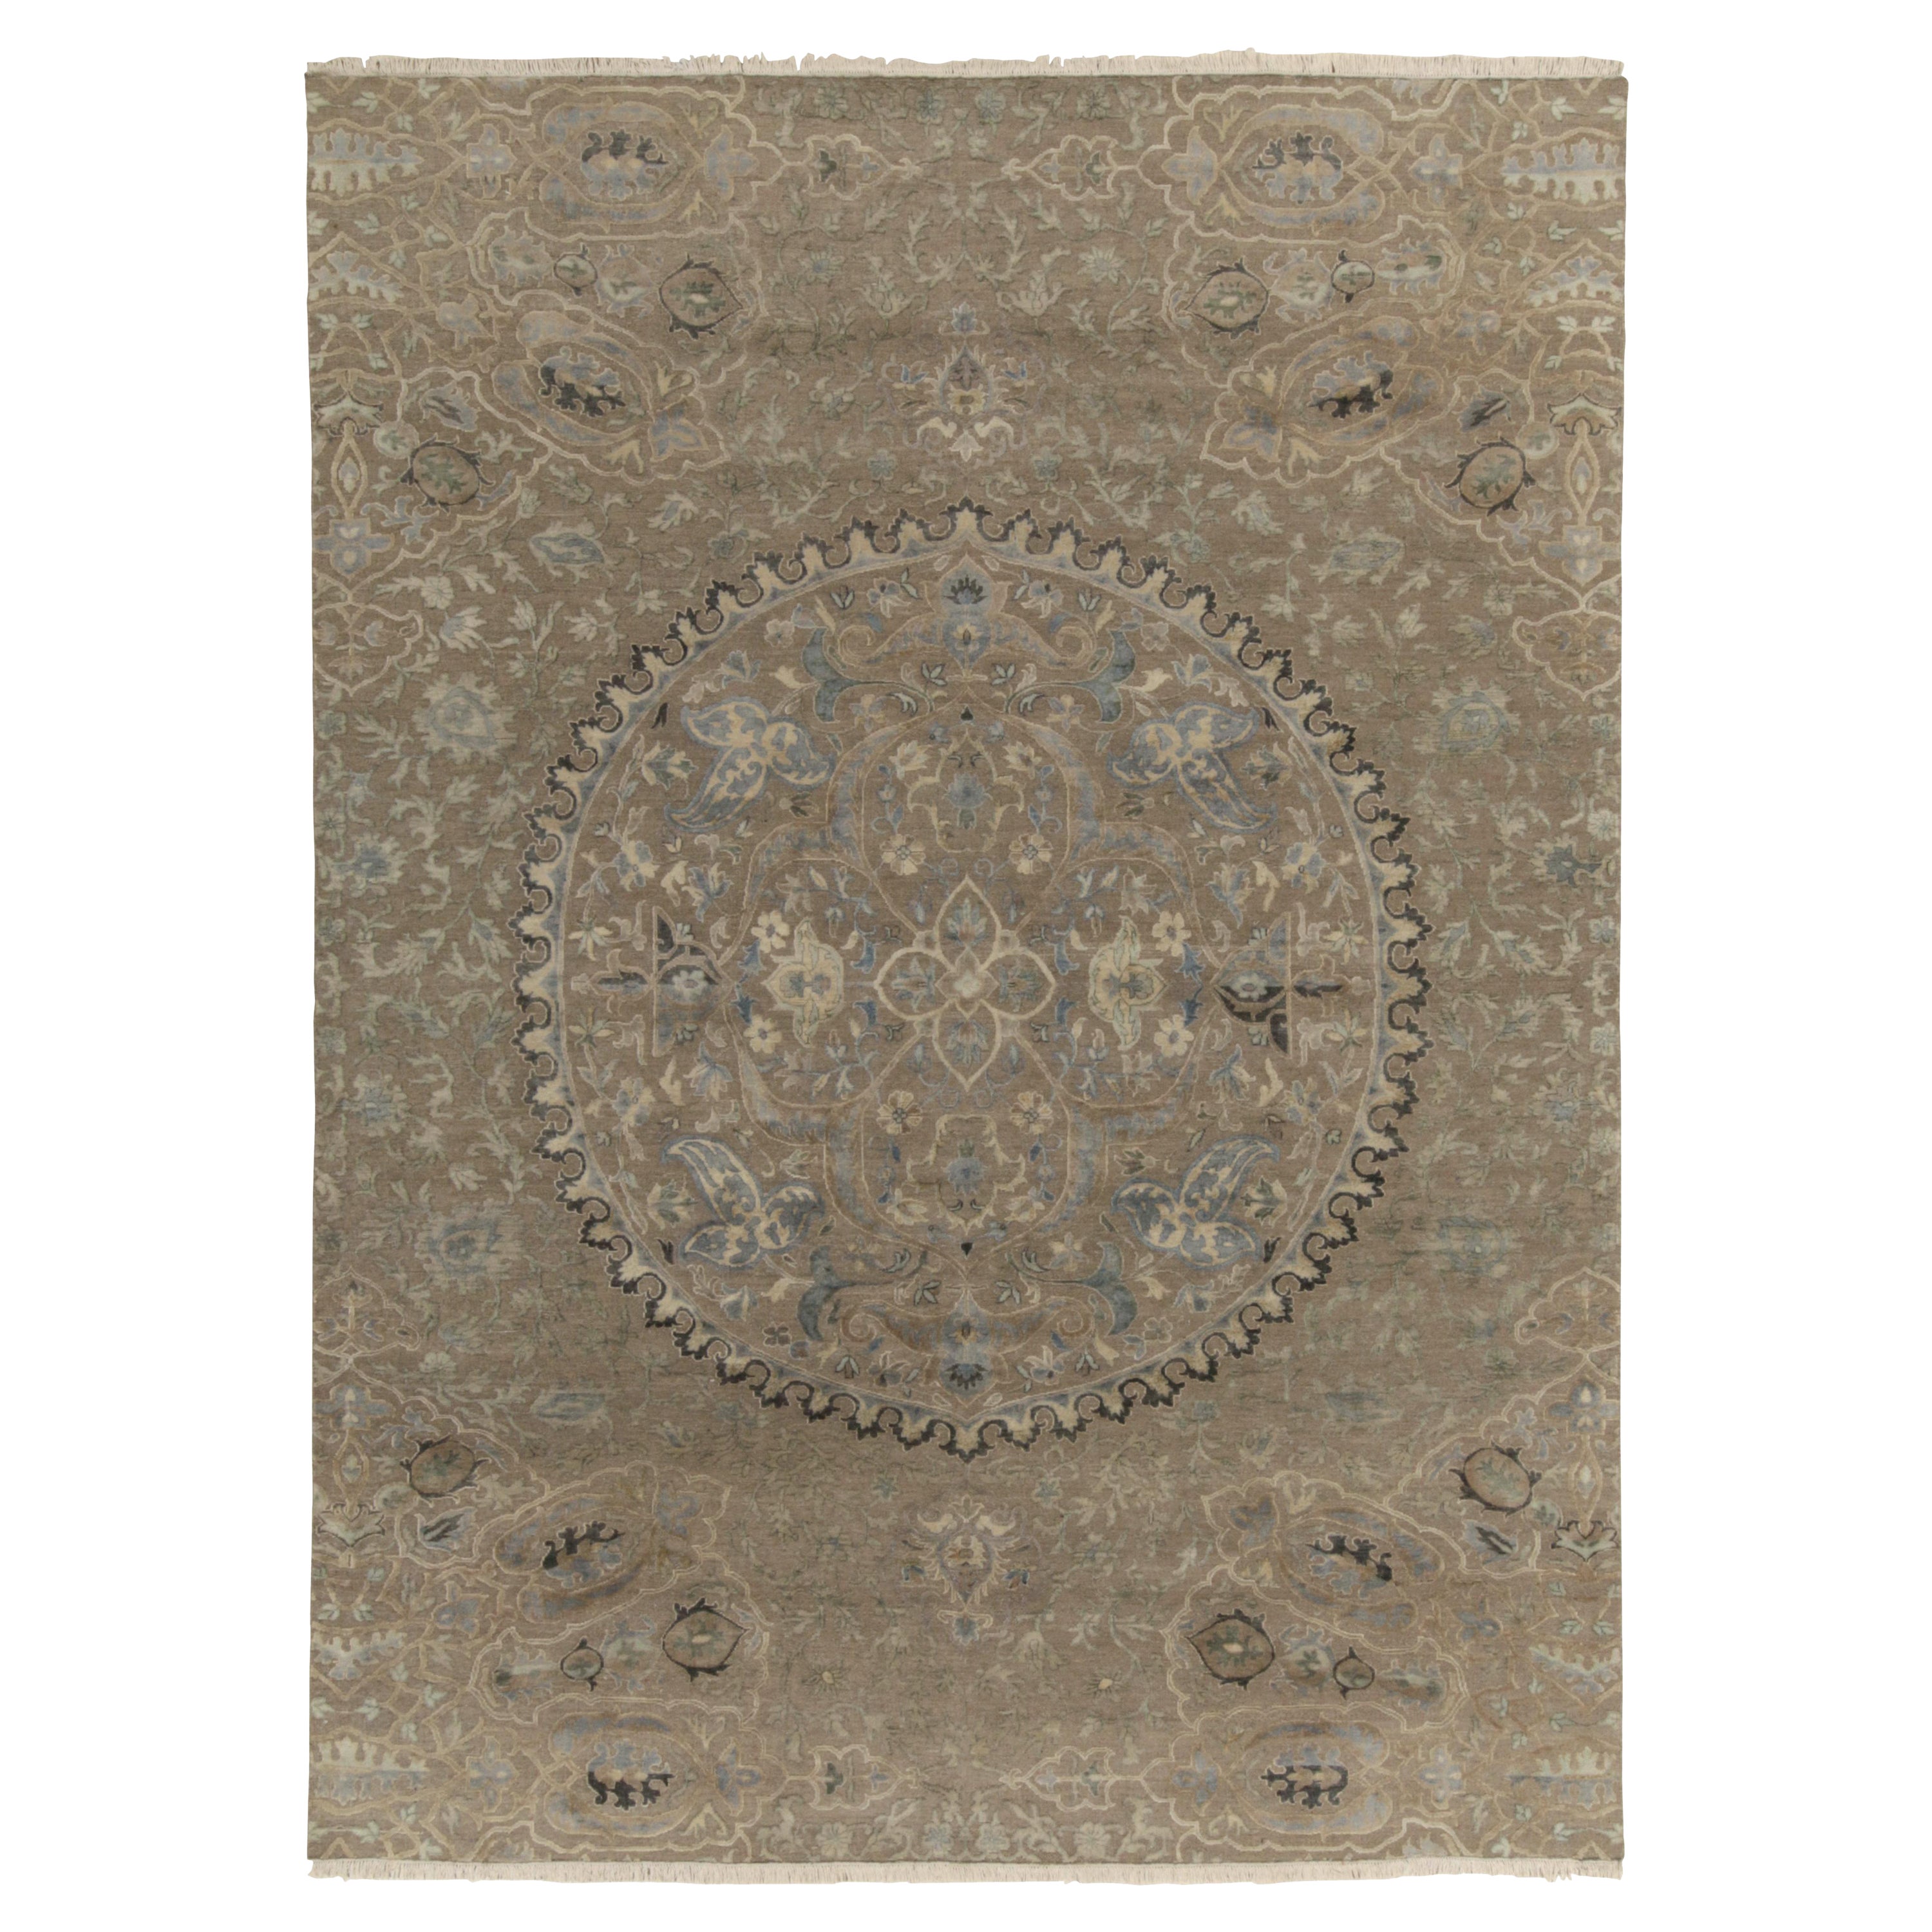 Teppich & Kilims im klassischen Stil in Beige, Grau und Blau mit Medaillon-Blumenmuster